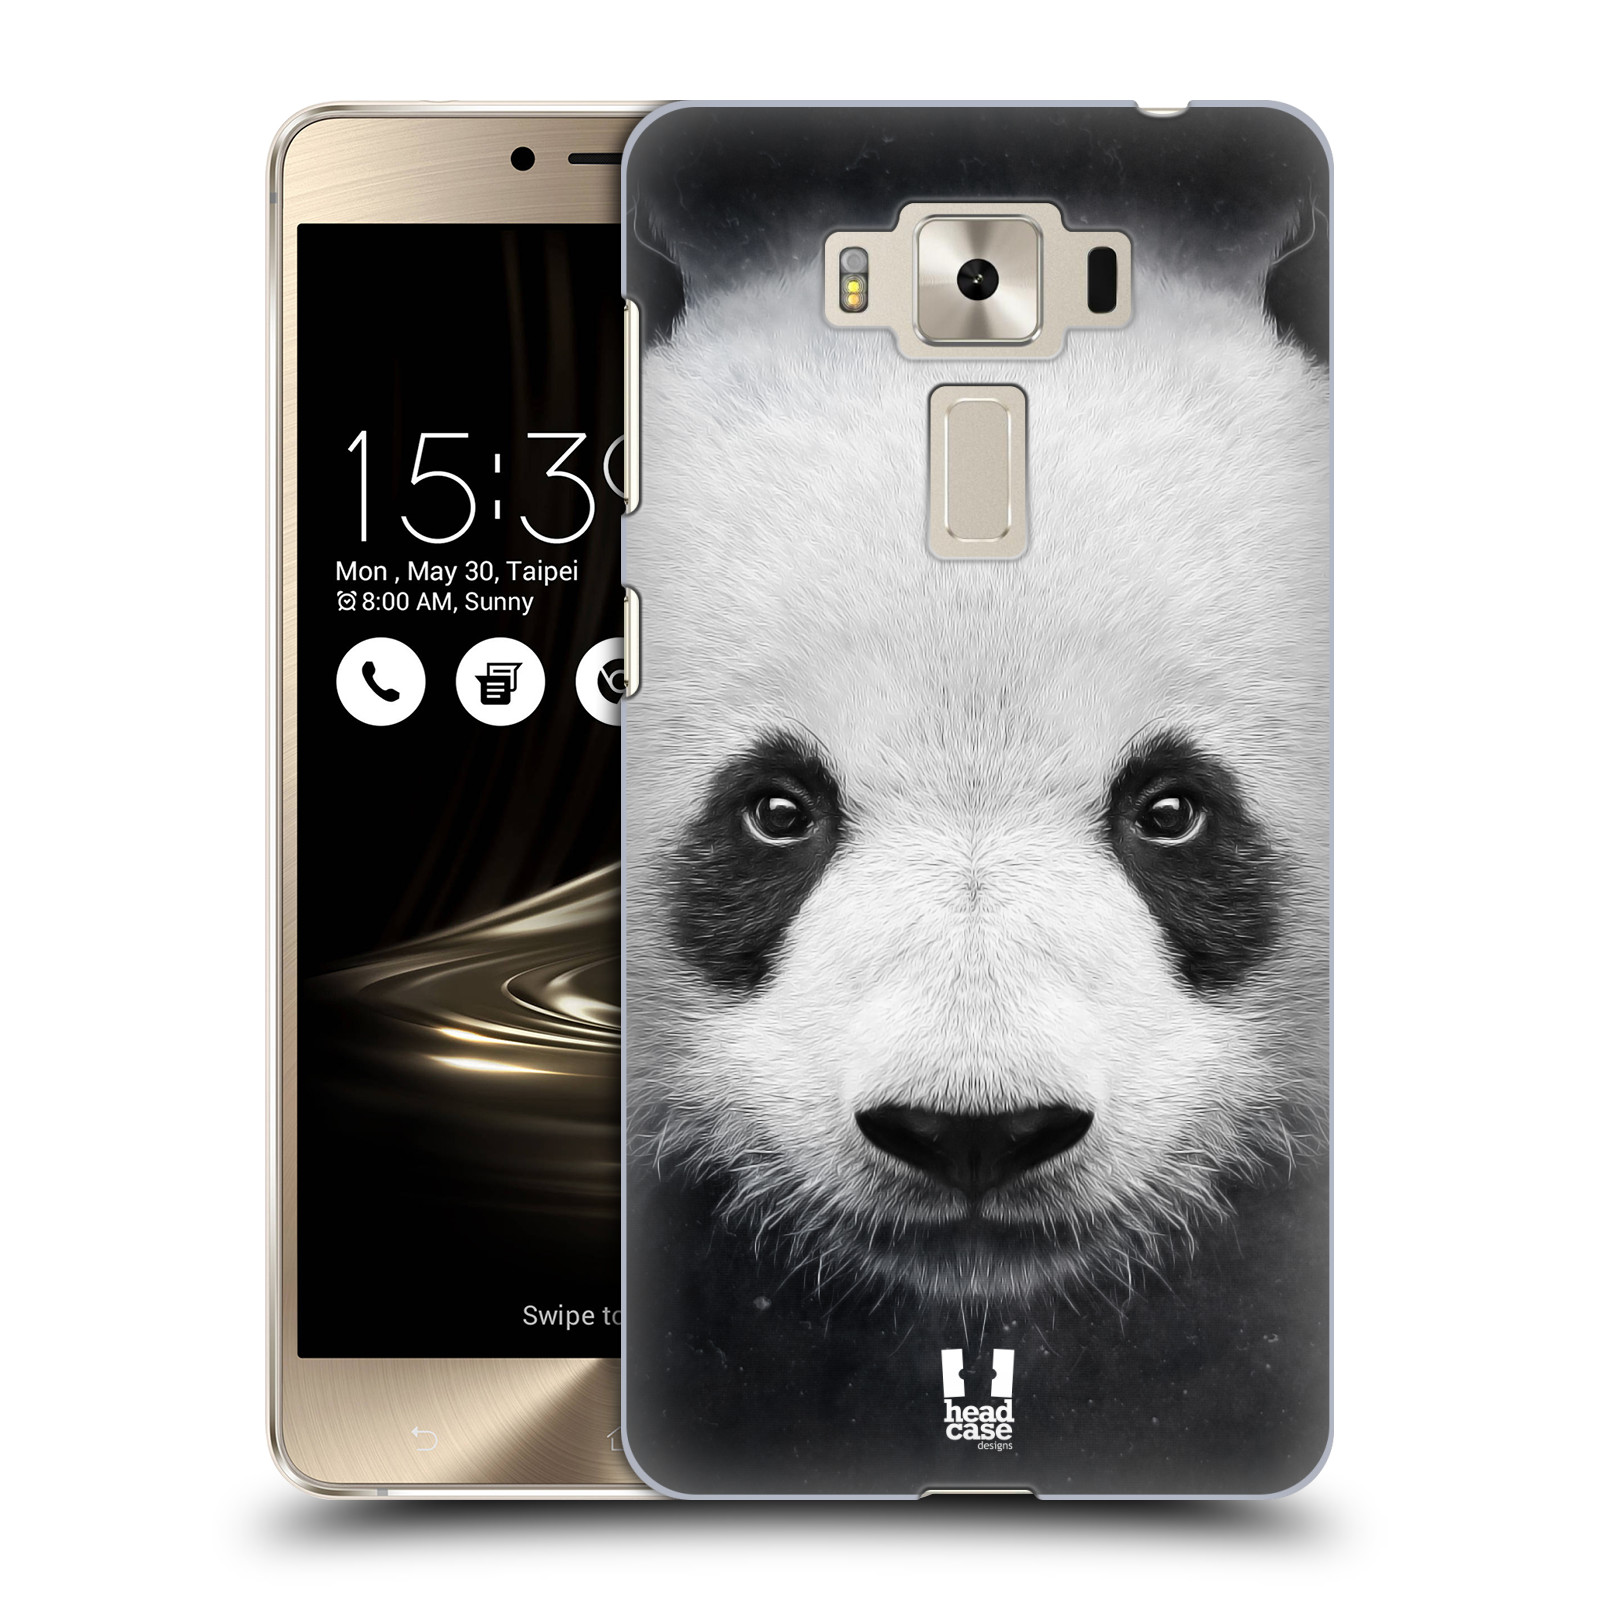 HEAD CASE plastový obal na mobil Asus Zenfone 3 DELUXE ZS550KL vzor Zvířecí tváře medvěd panda